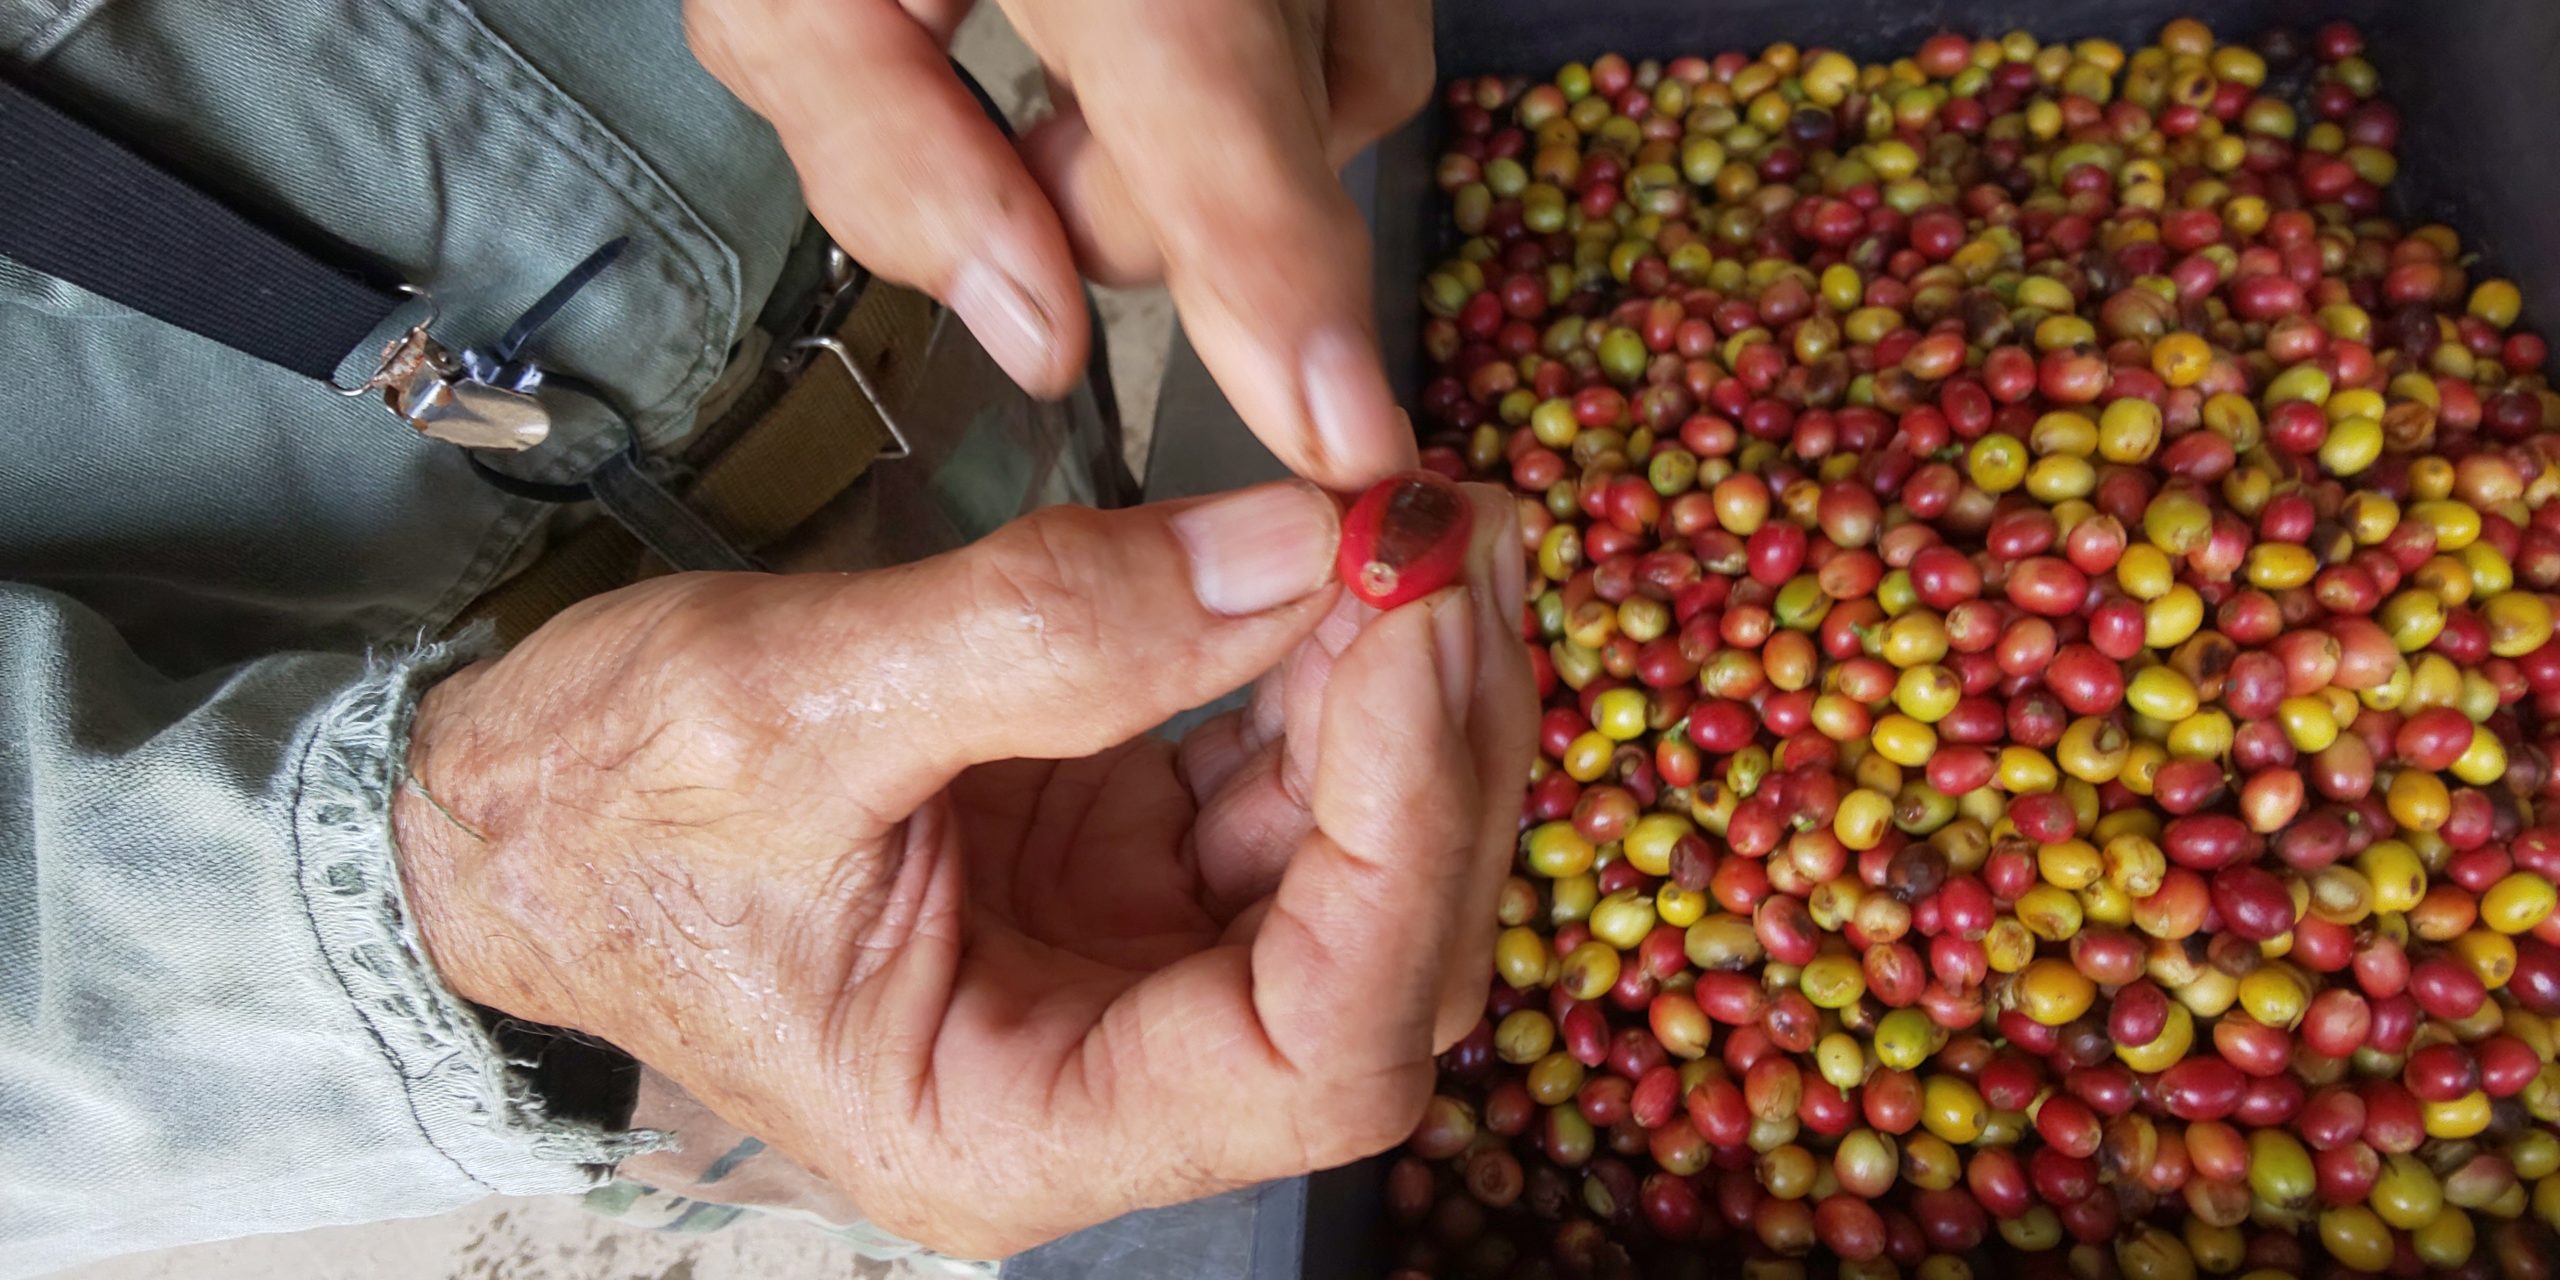 コーヒーの実から豆を取り出す作業を見学 沖縄コーヒー農園 19年10月 旅行記 観光名人旅行記ブログ